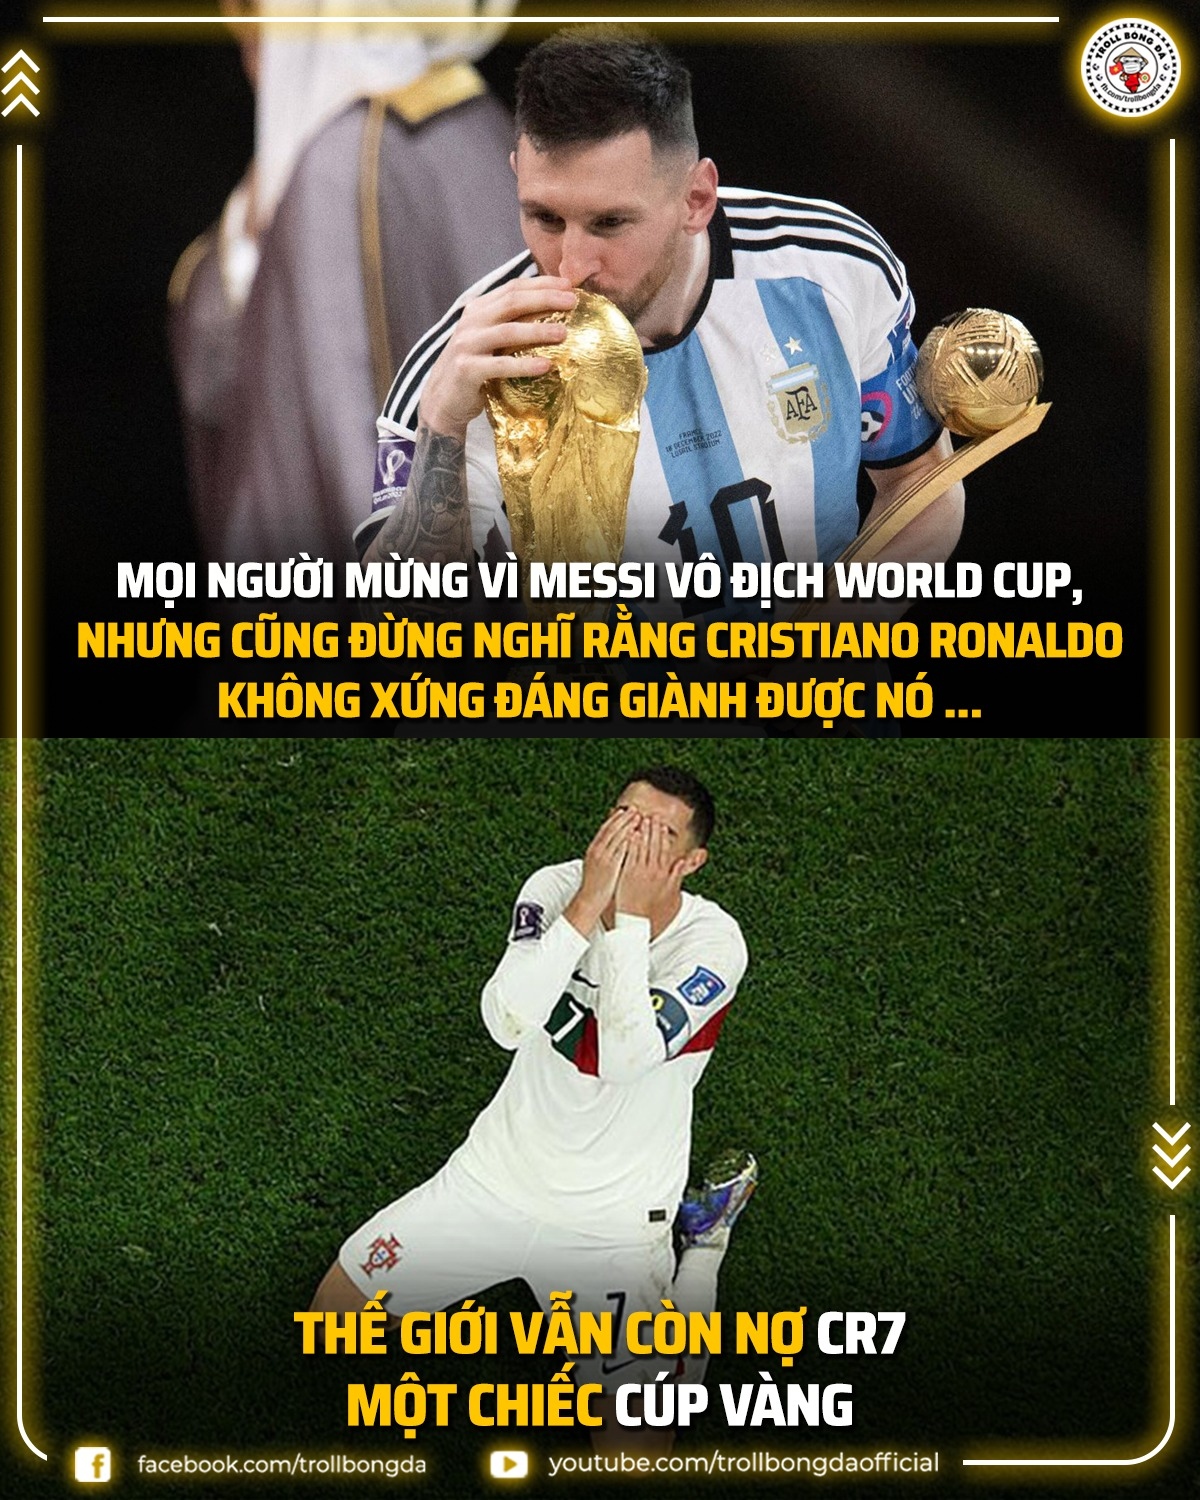 Biếm họa 24h: Thế giới bóng đá vẫn nợ Ronaldo một chiếc cúp vàng